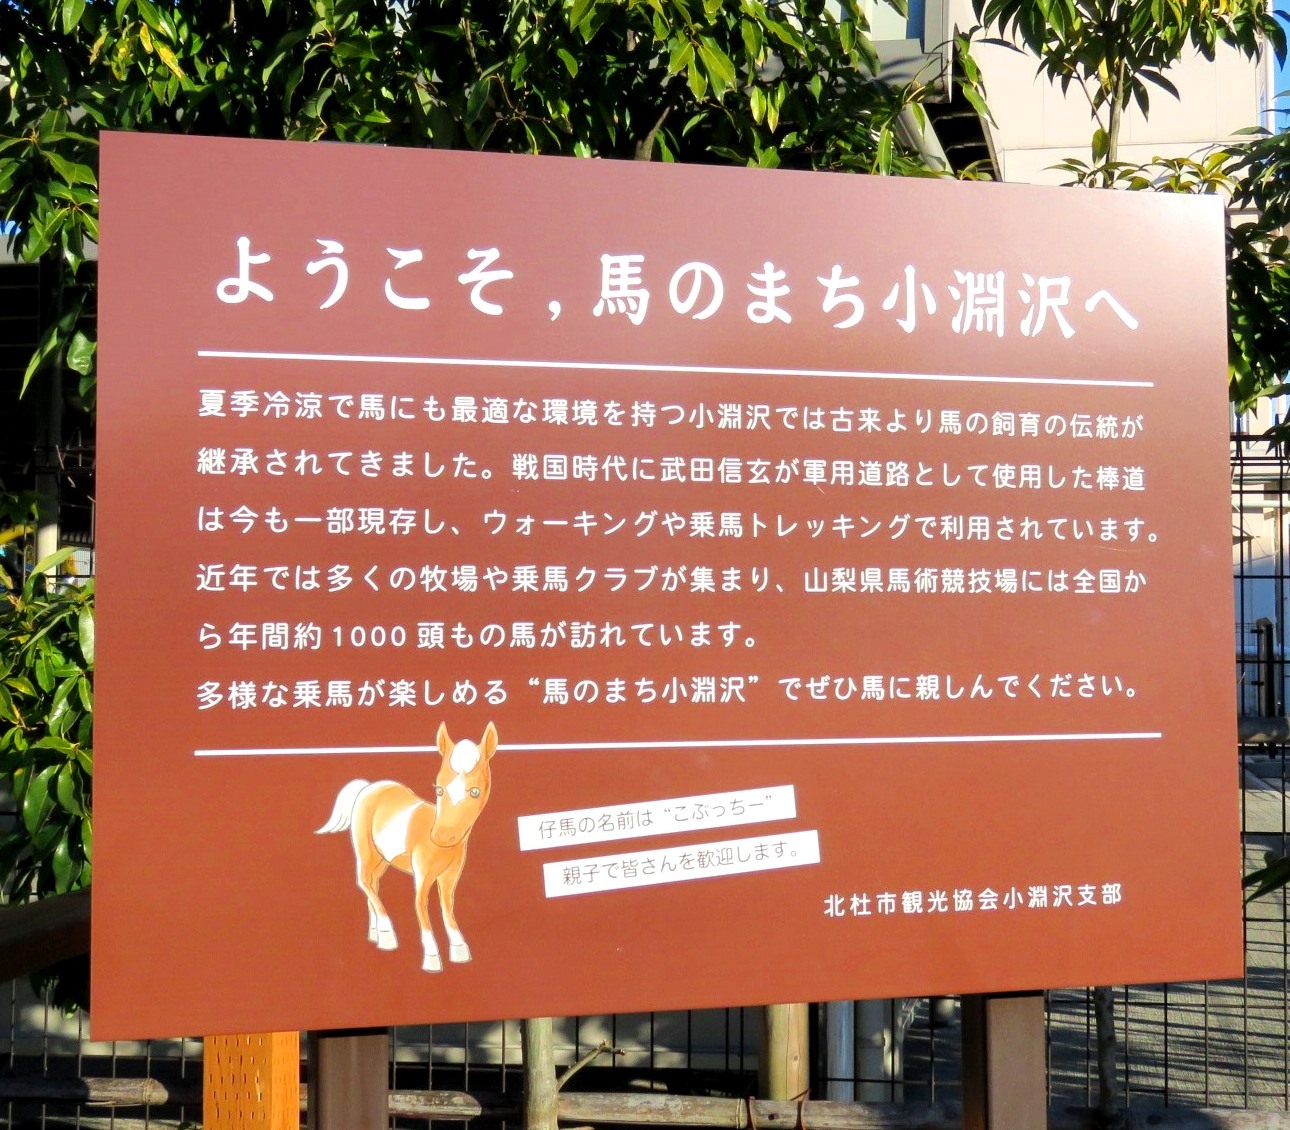 JR小淵沢駅に設置されている看板「ようこそ、馬のまち小淵沢へ」